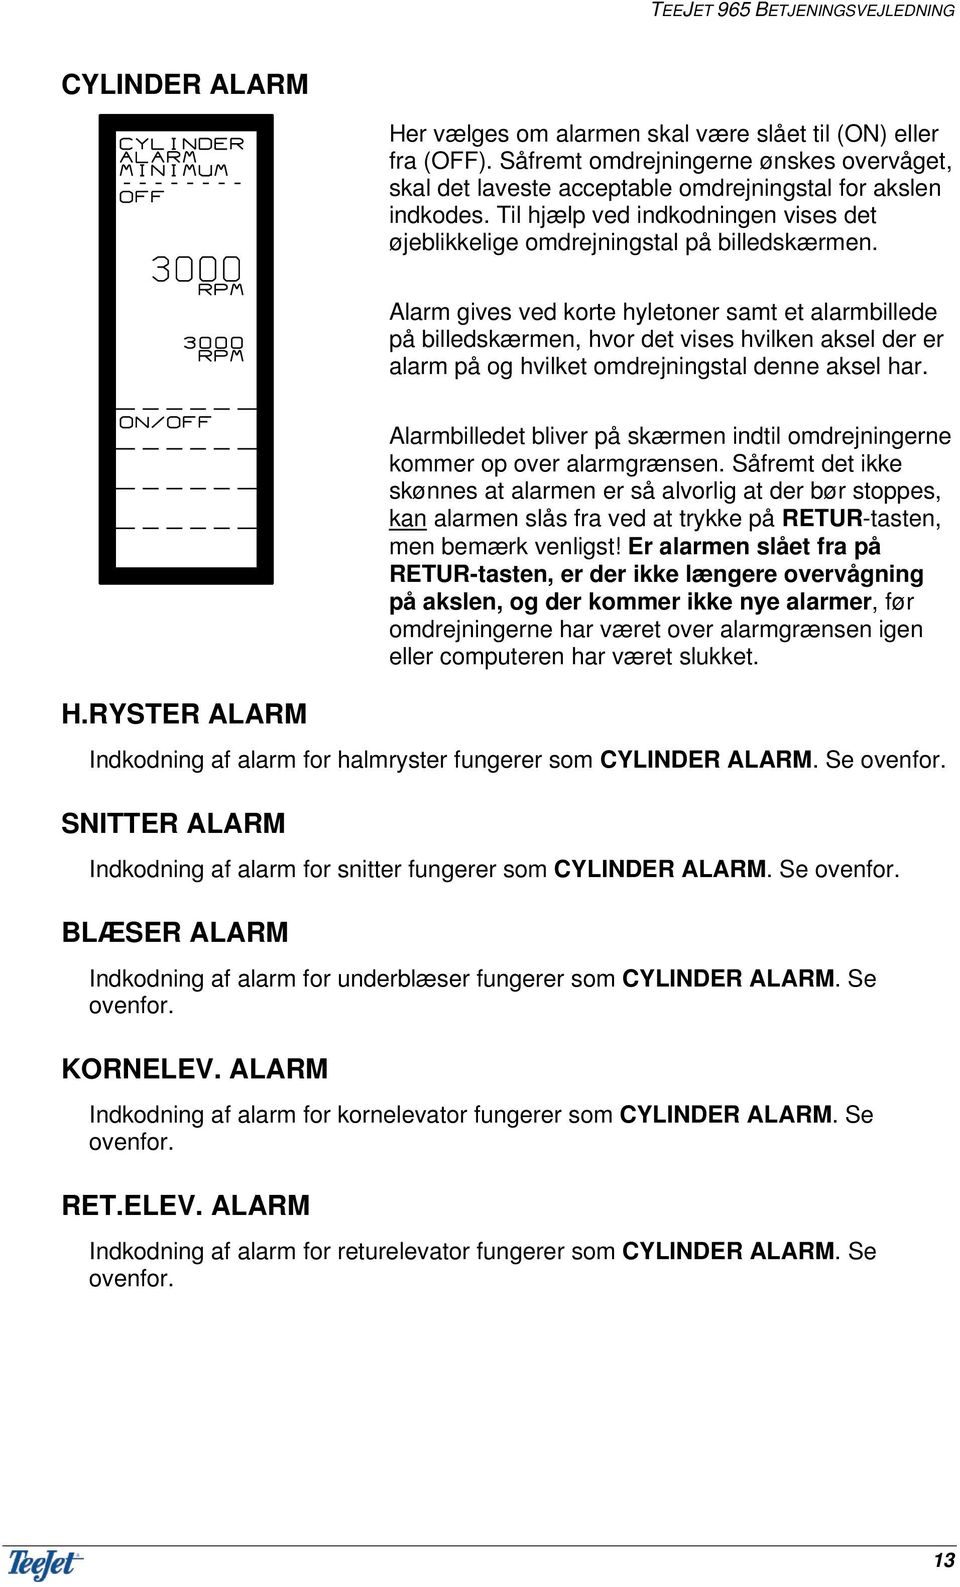 Alarm gives ved korte hyletoner samt et alarmbillede på billedskærmen, hvor det vises hvilken aksel der er alarm på og hvilket omdrejningstal denne aksel har. H.